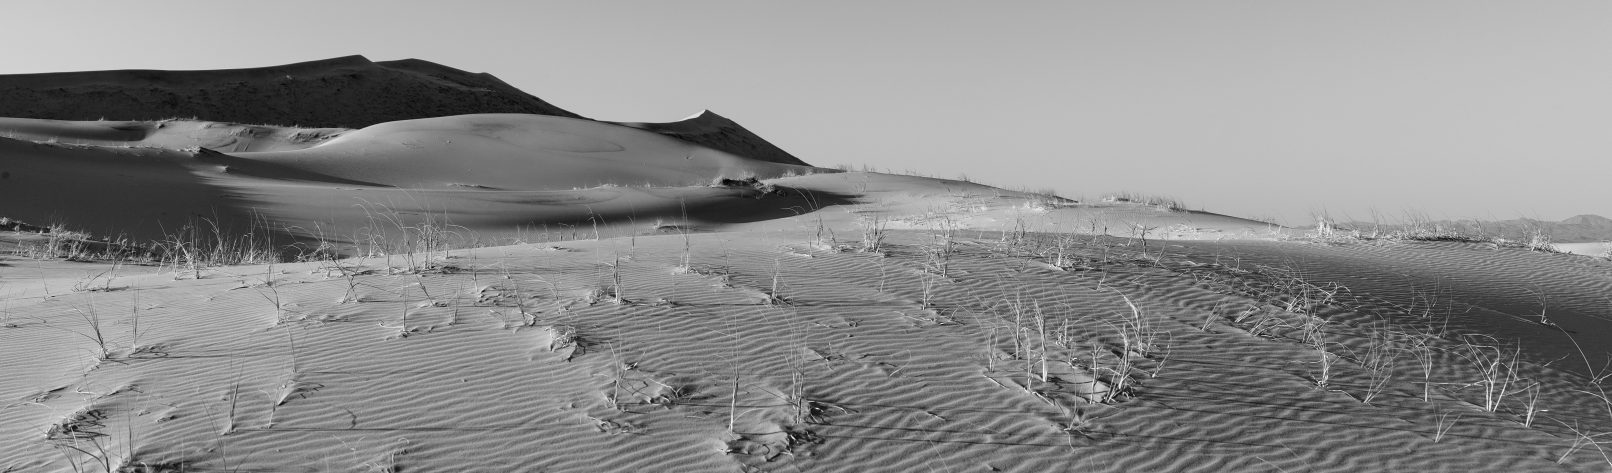 Sand dune at Mojave Desert, California